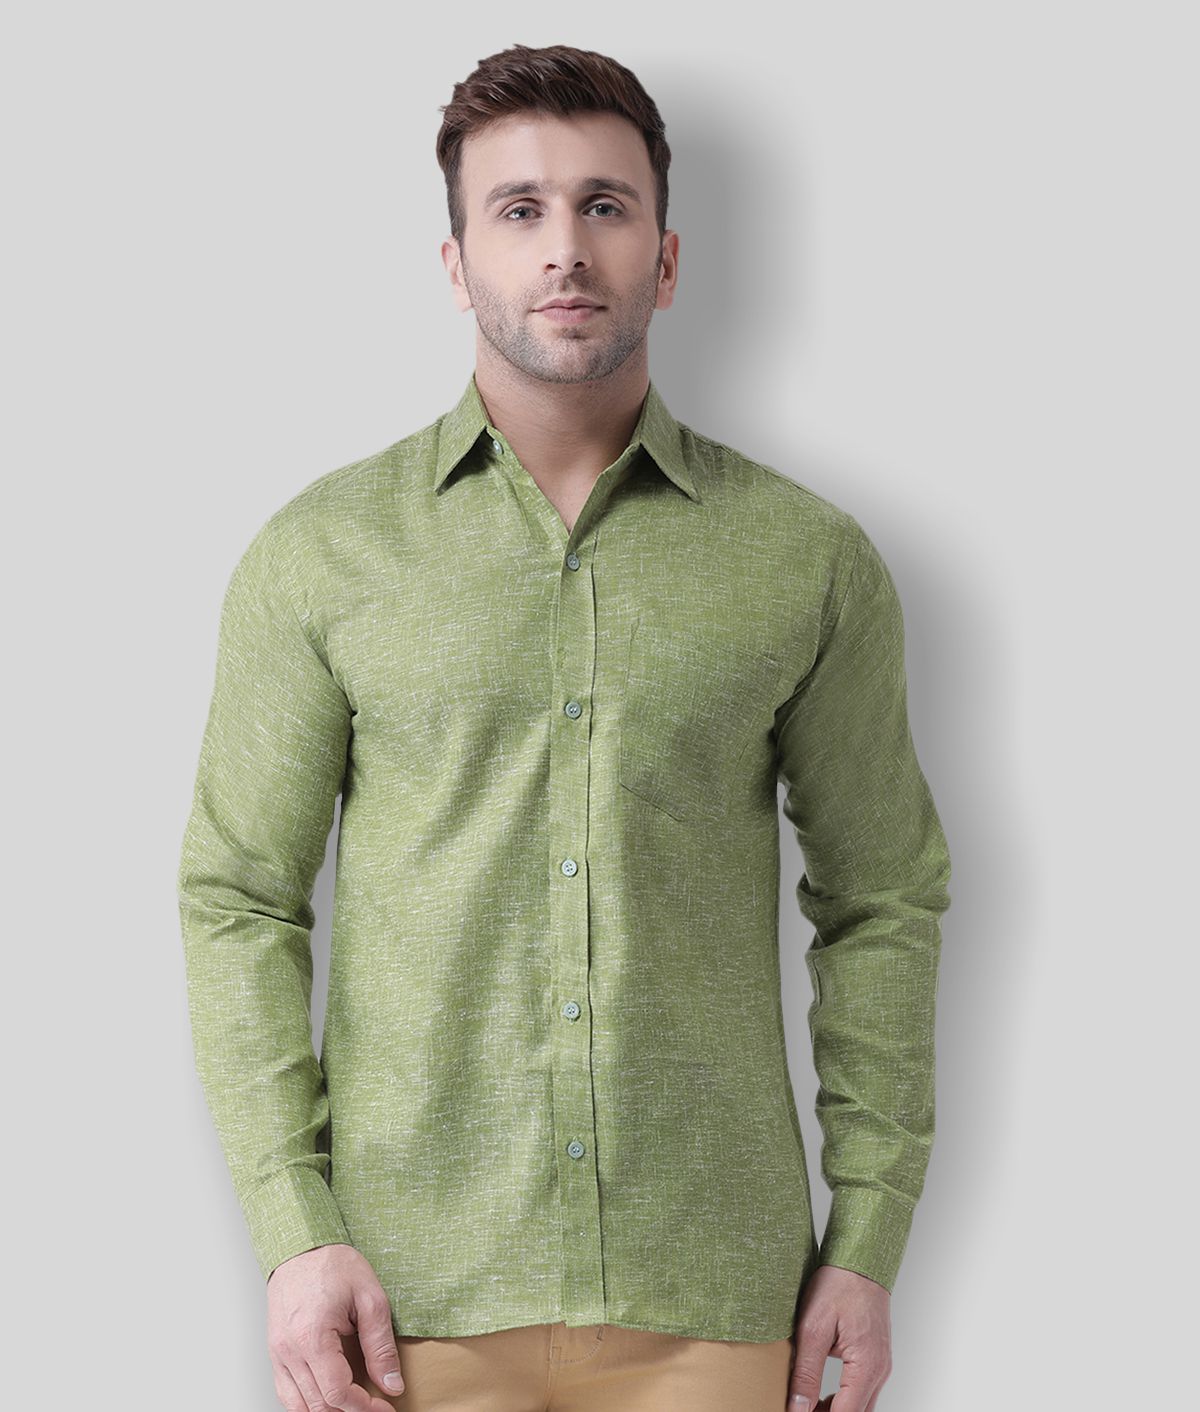 RIAG - Green Linen Regular Fit Men's Casual Shirt (Pack of 1)